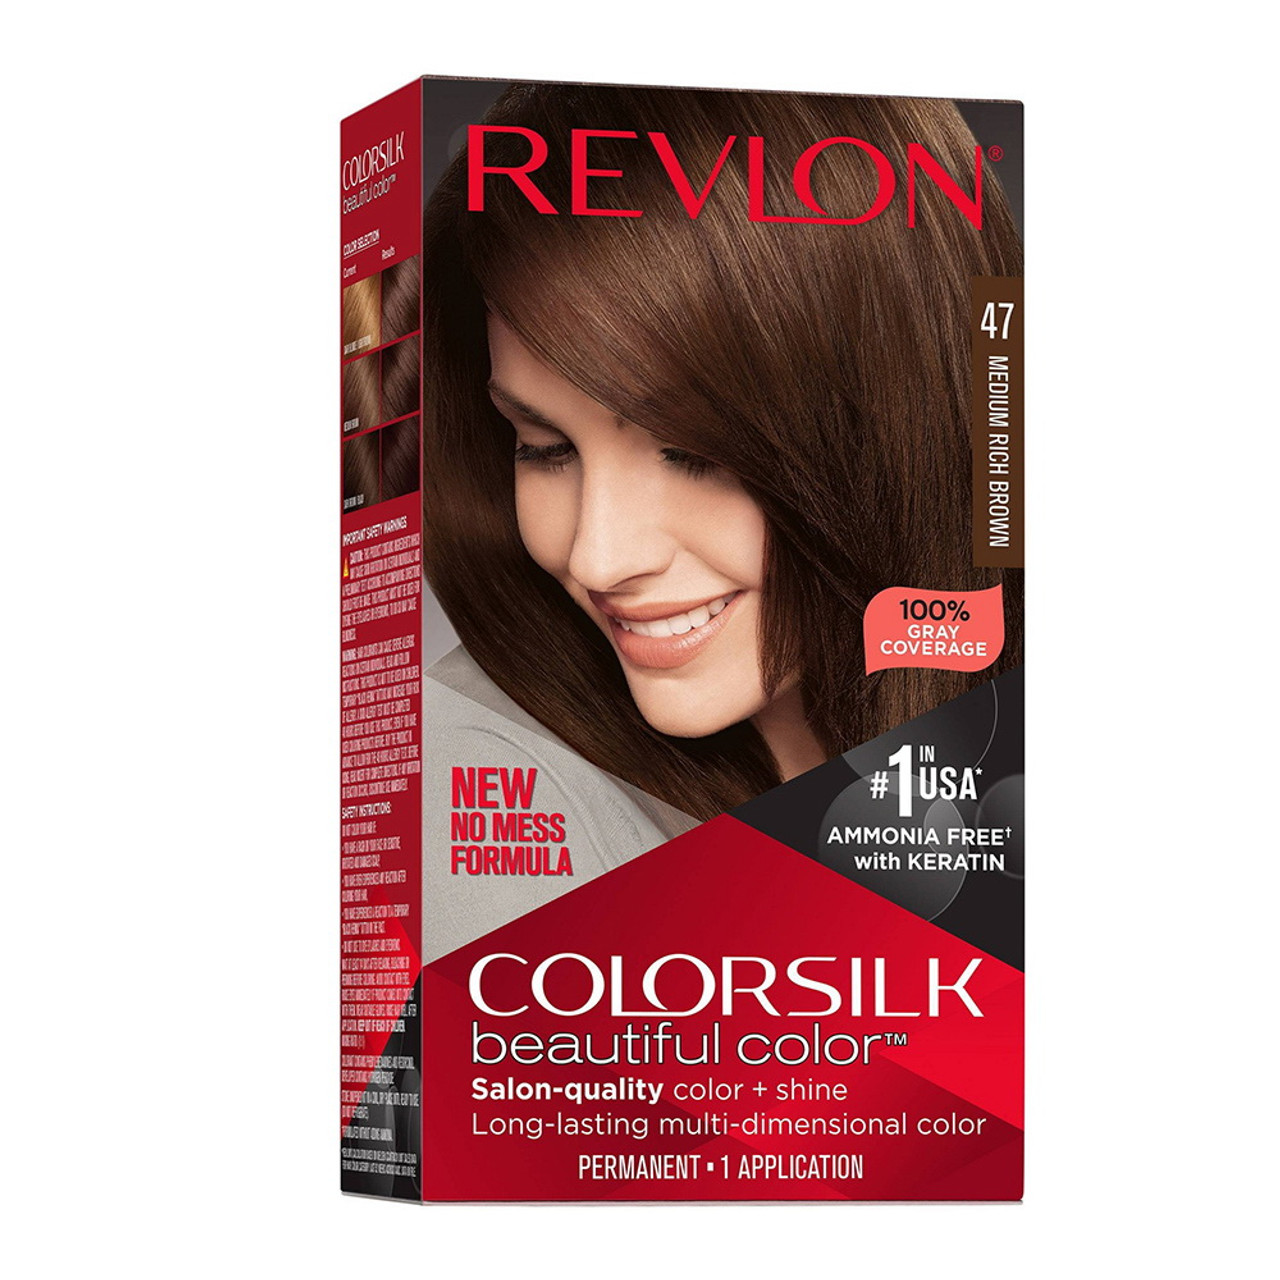 Revlon Colorsilk Beautiful Color Permanent Hair Color, 47 Medium Rich ...